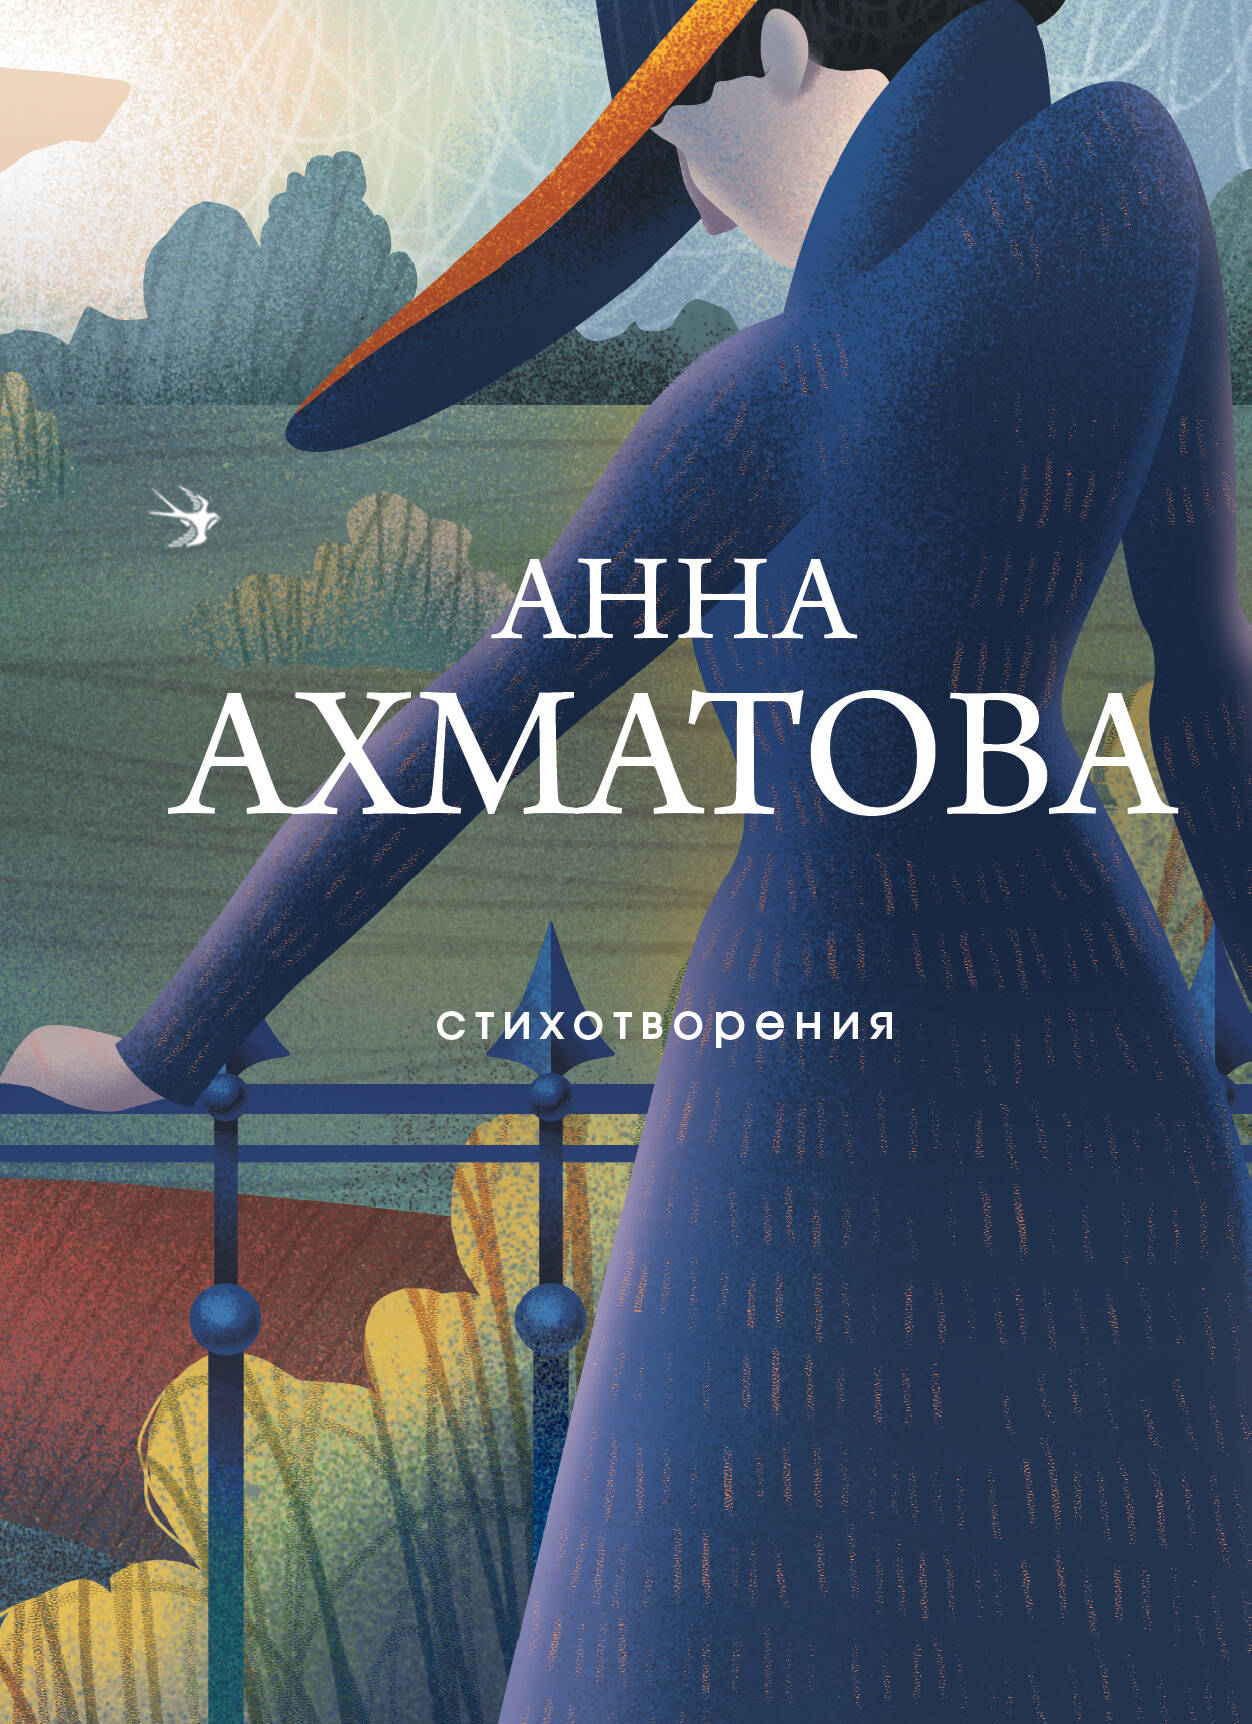 Ахматова Анна Андреевна - Анна Ахматова. Стихотворения